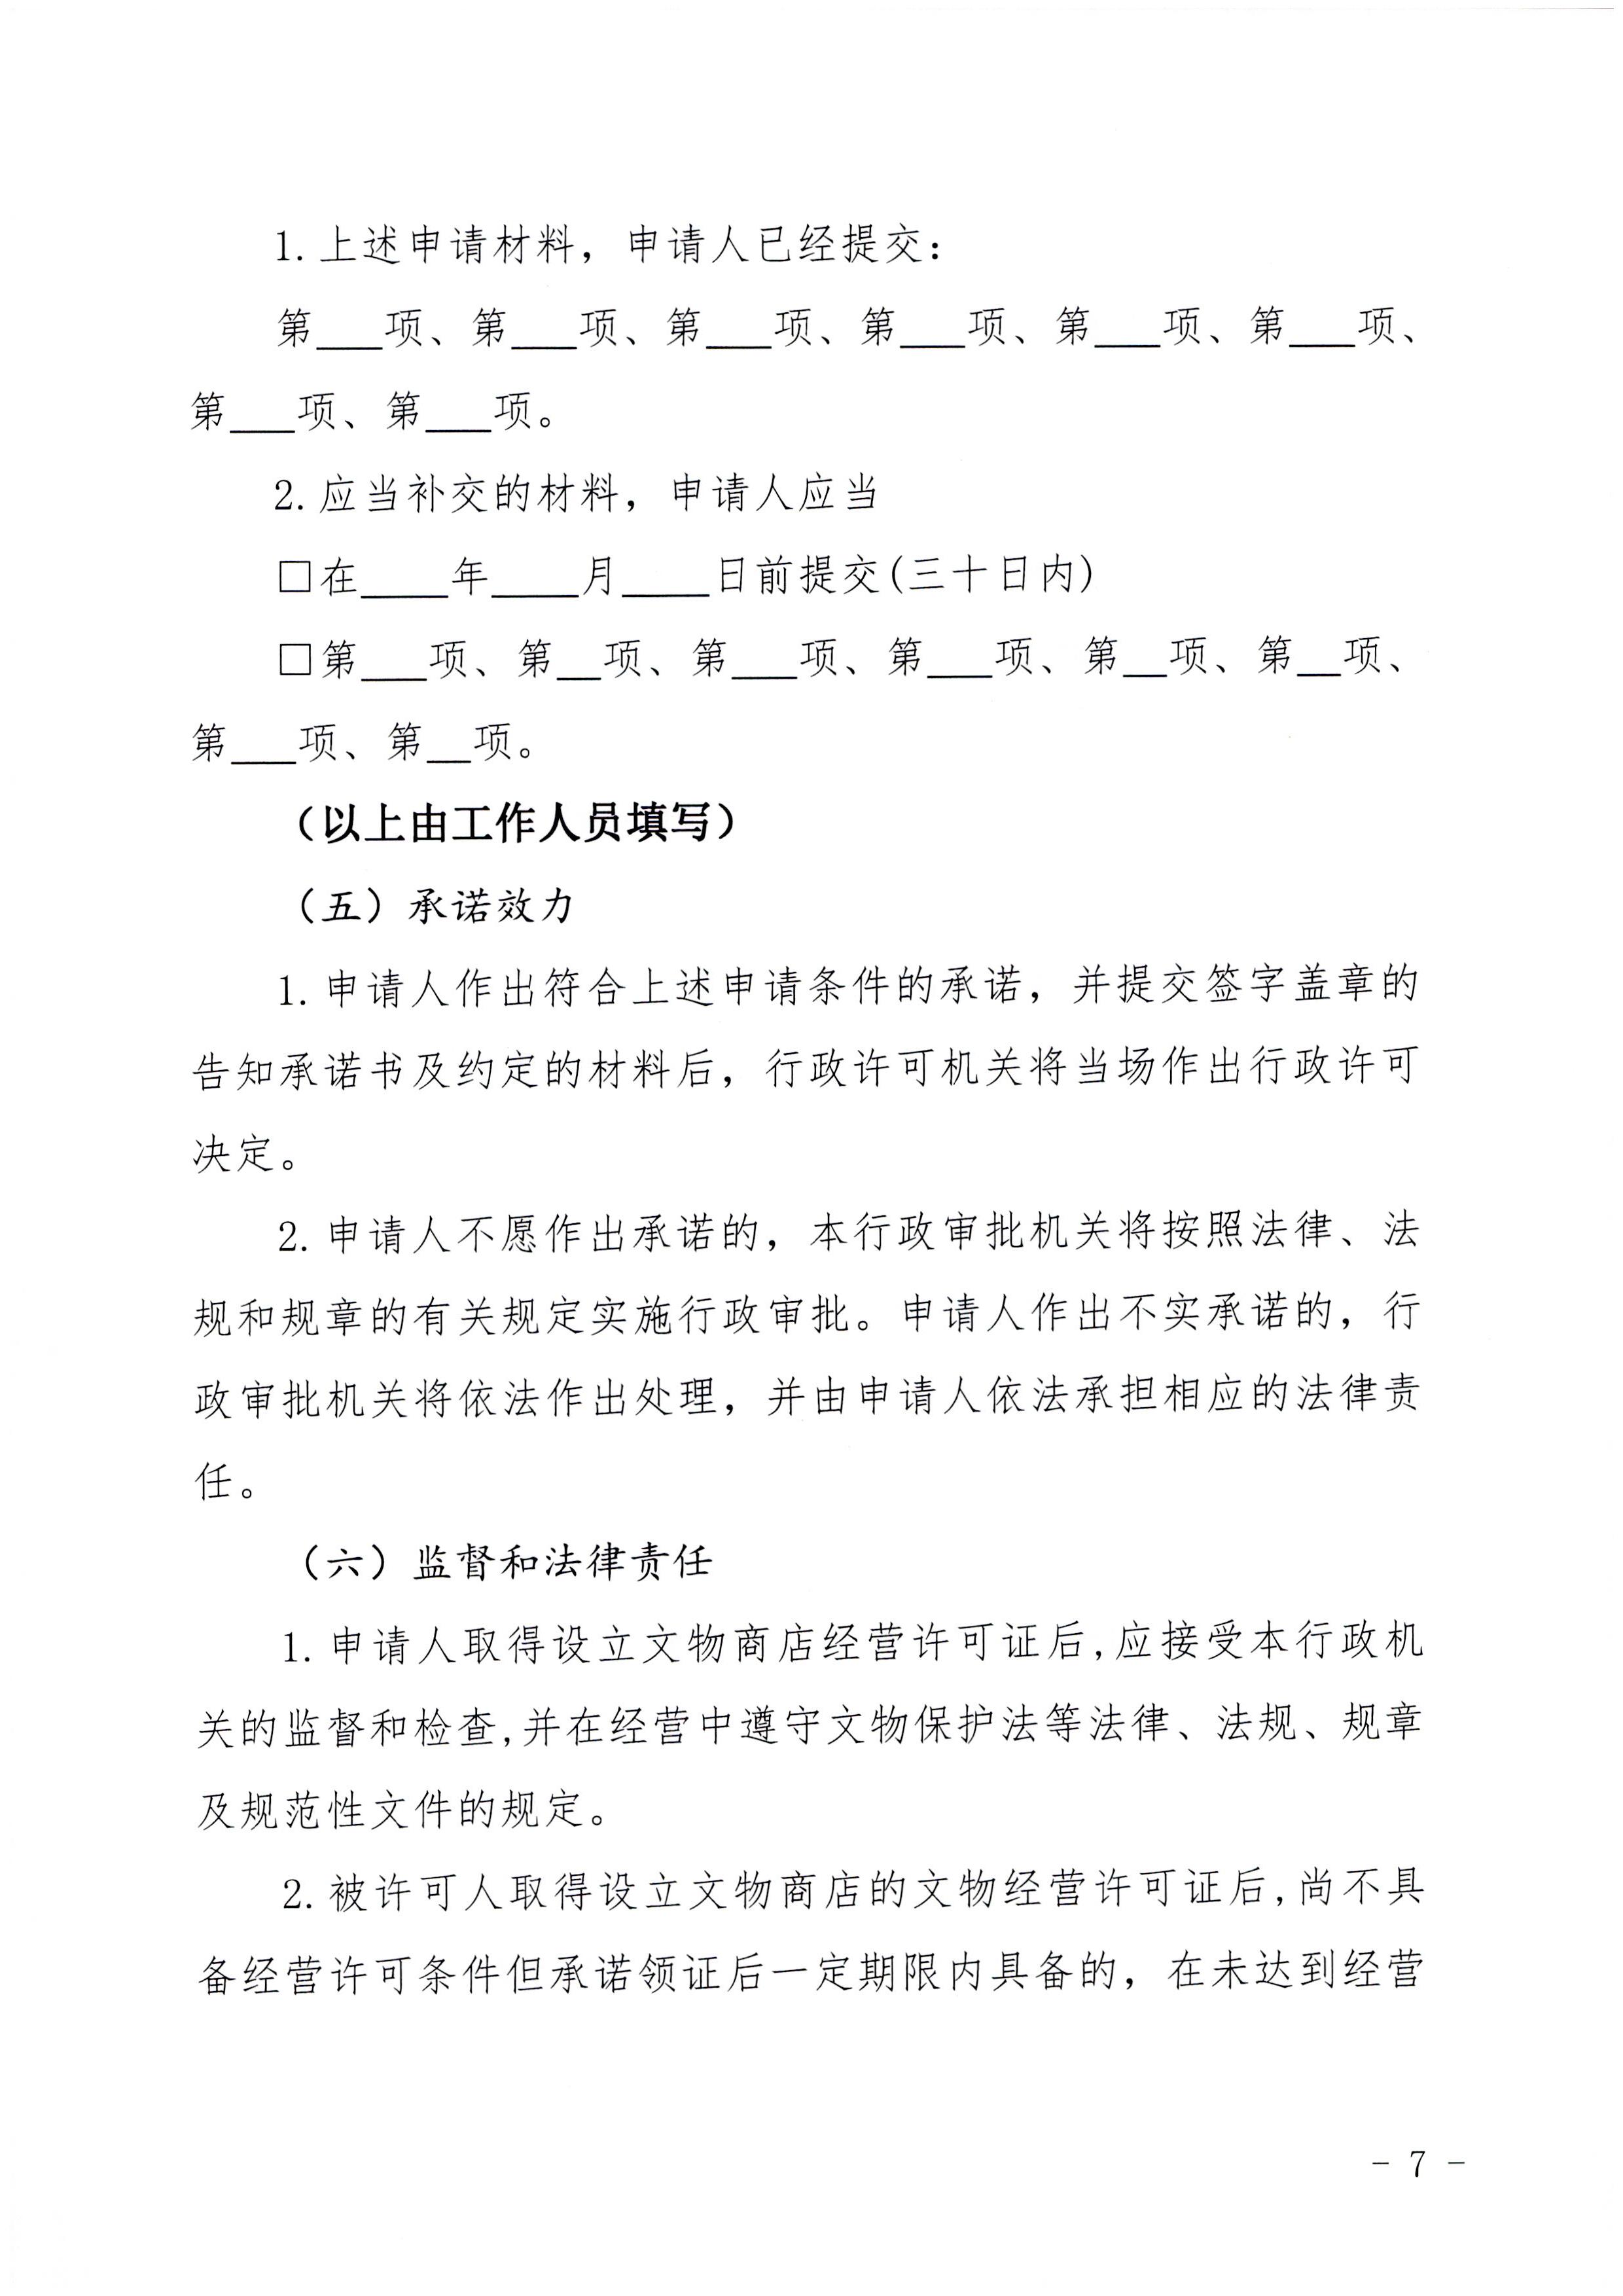 广东省文化和旅游厅印发证照分离改革实施方案的通知_页面_53.jpg